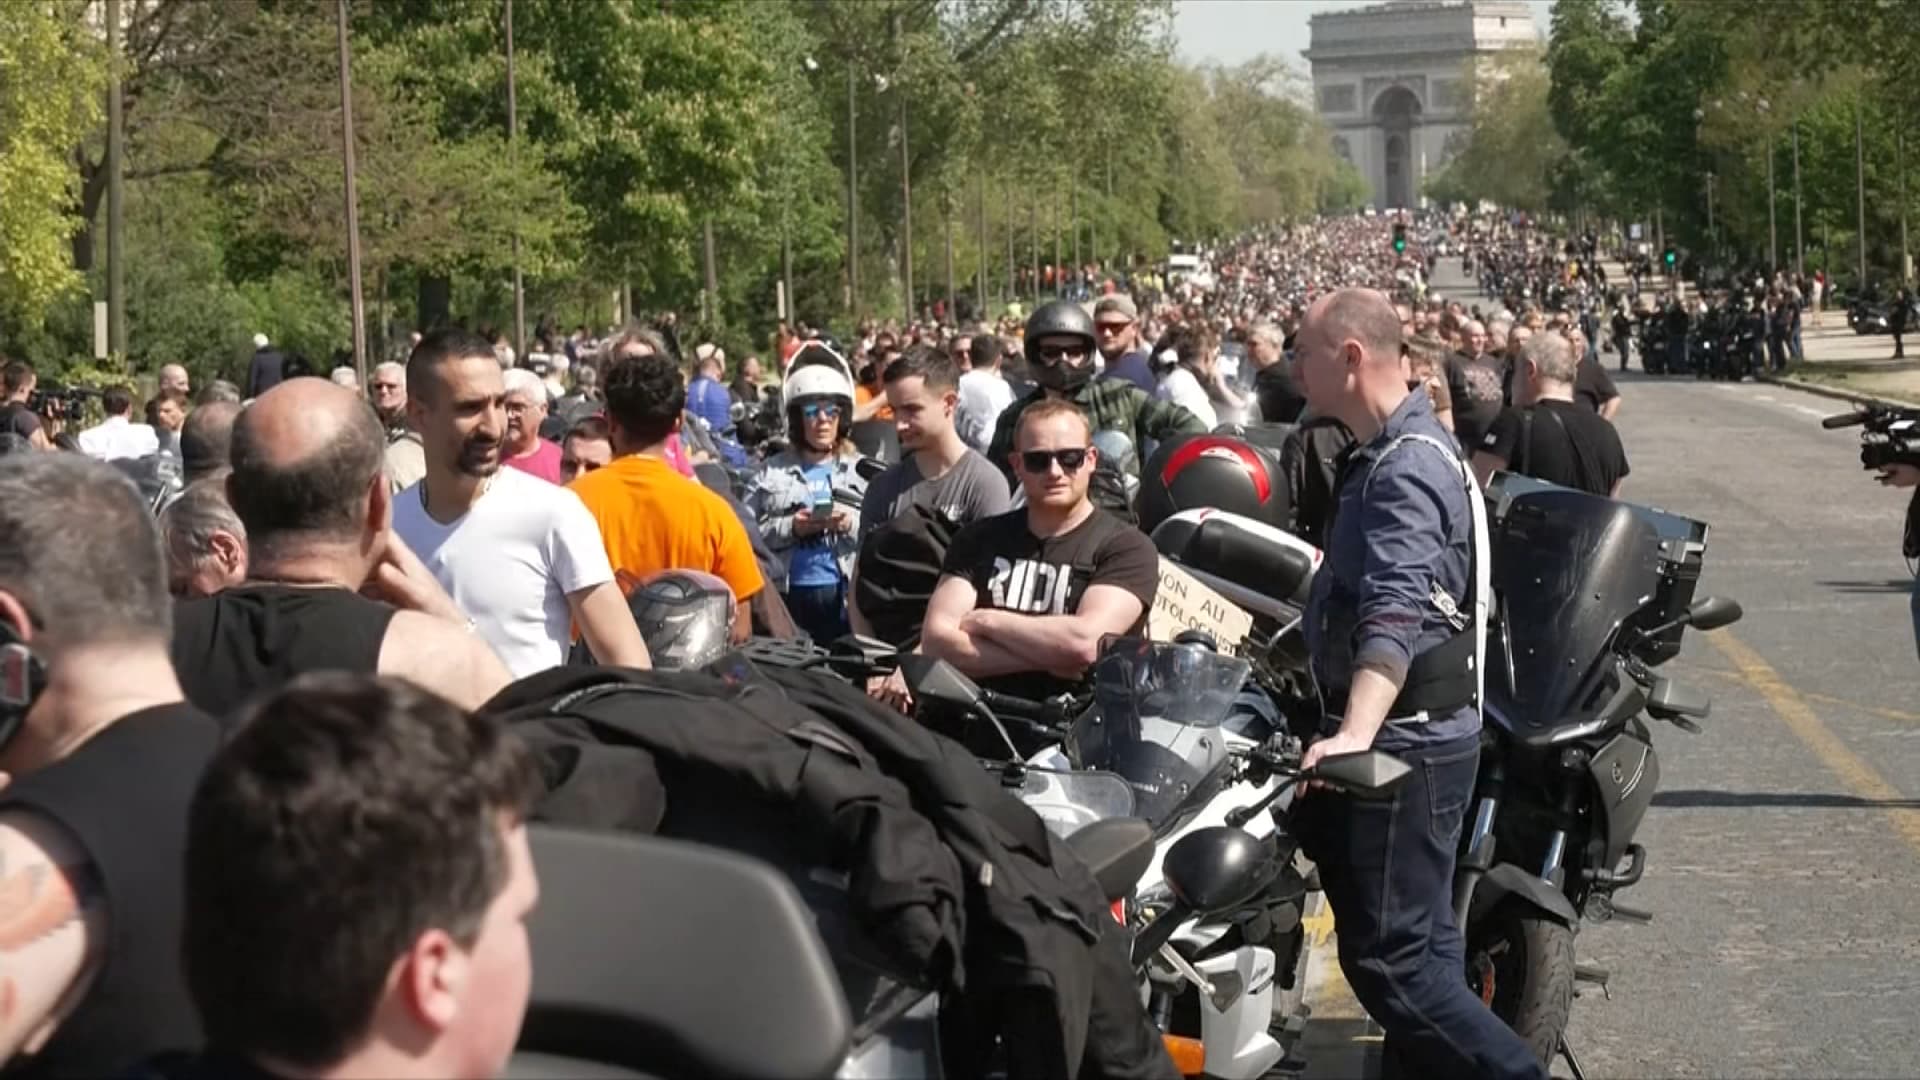 contrôle technique des deux-roues: plusieurs milliers de motards manifestent à paris, la circulation perturbée